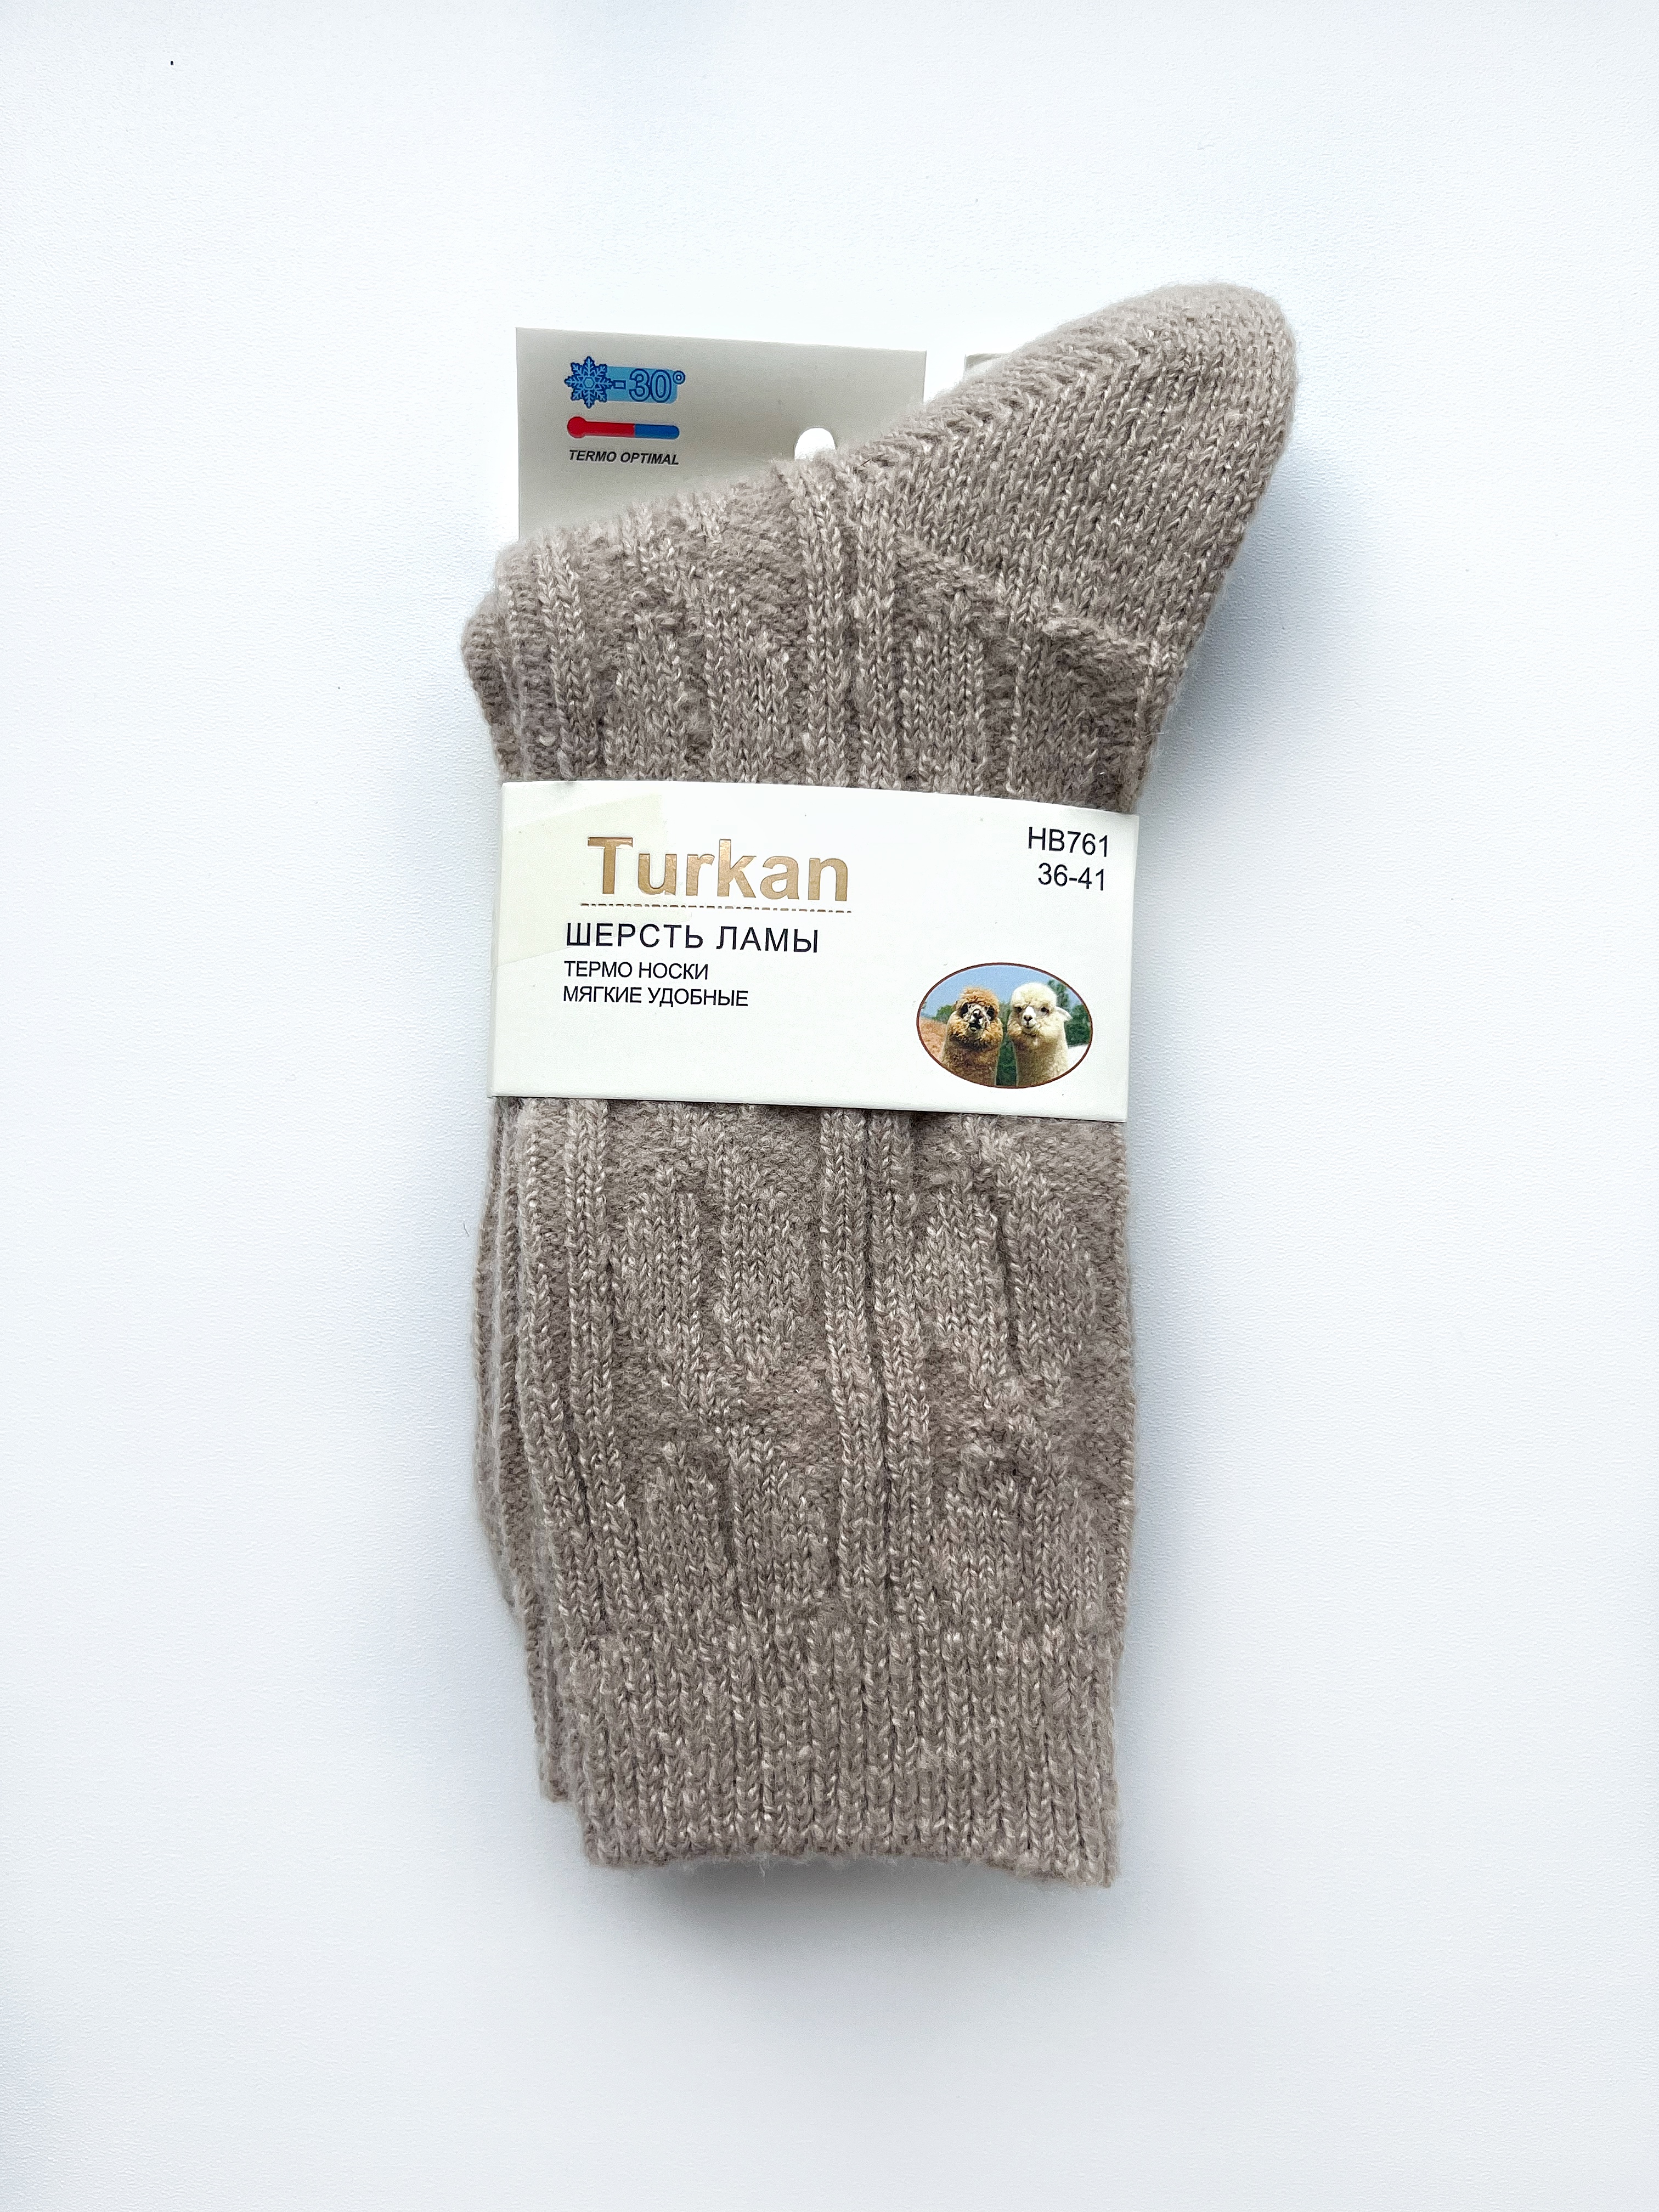 Носки женские Turkan Шерсть ламы бежевые 36-41